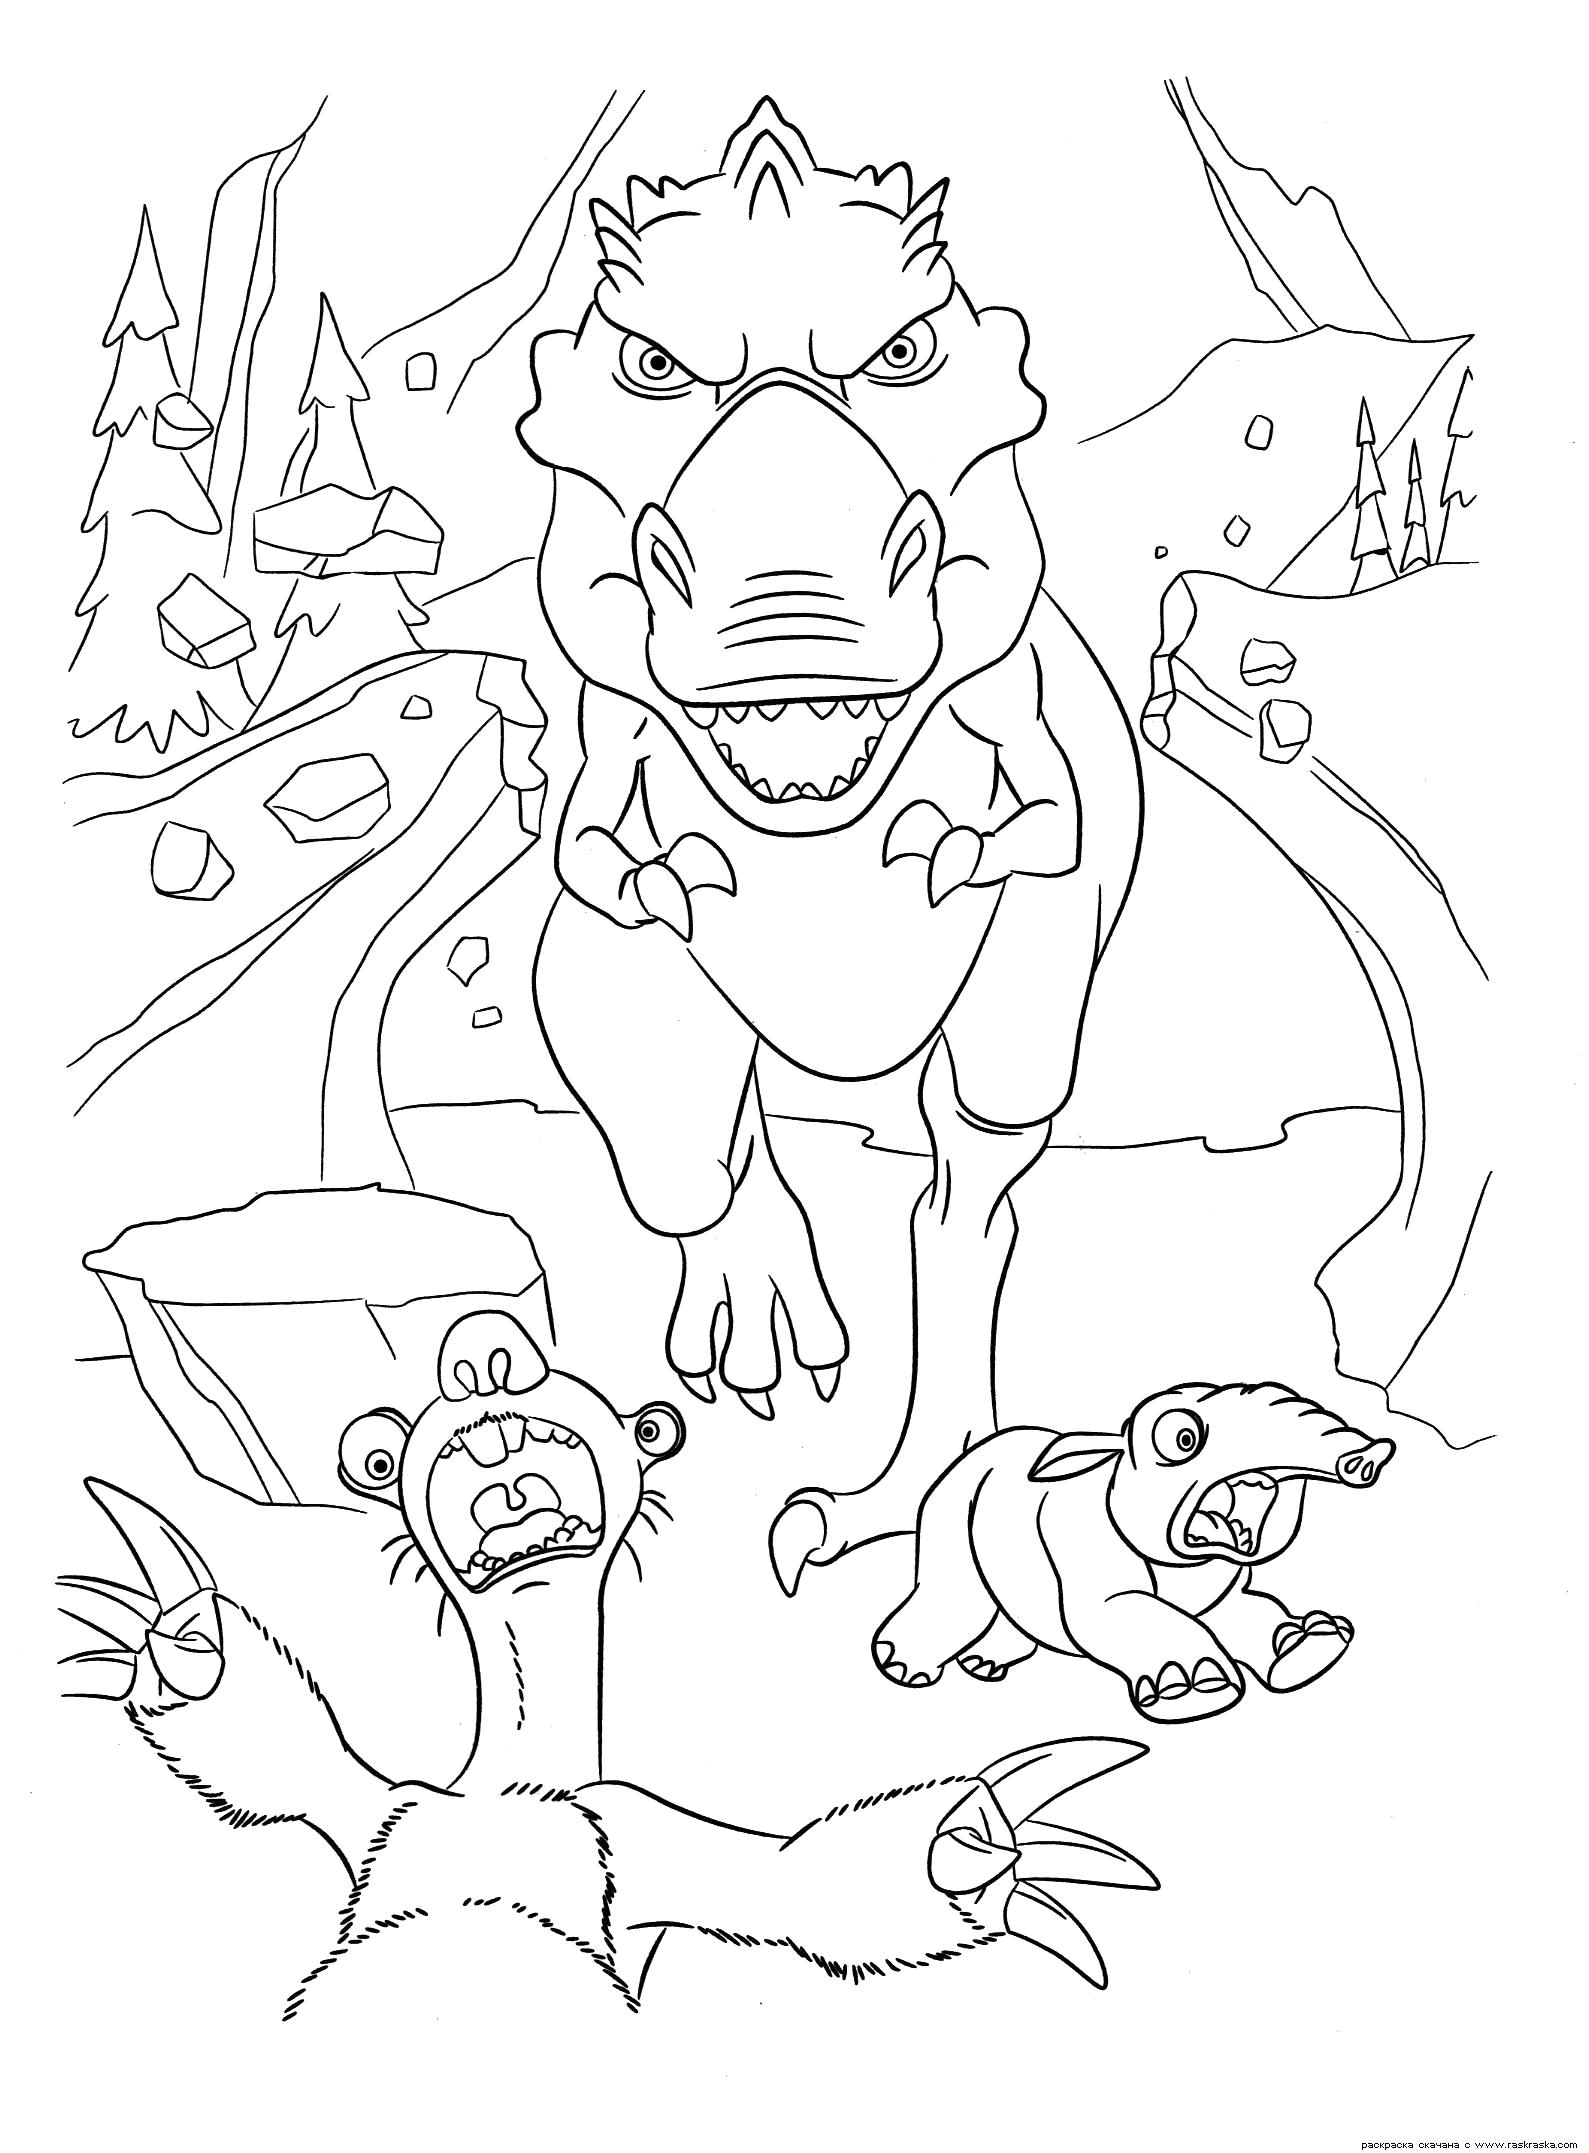 Раскраска Раскраска Сид в панике. Раскраска Ленивец Сид и динозавр из мультфильма Ледниковый период 3. Эра динозавров. Раскраска для детей с динозавром. динозавр